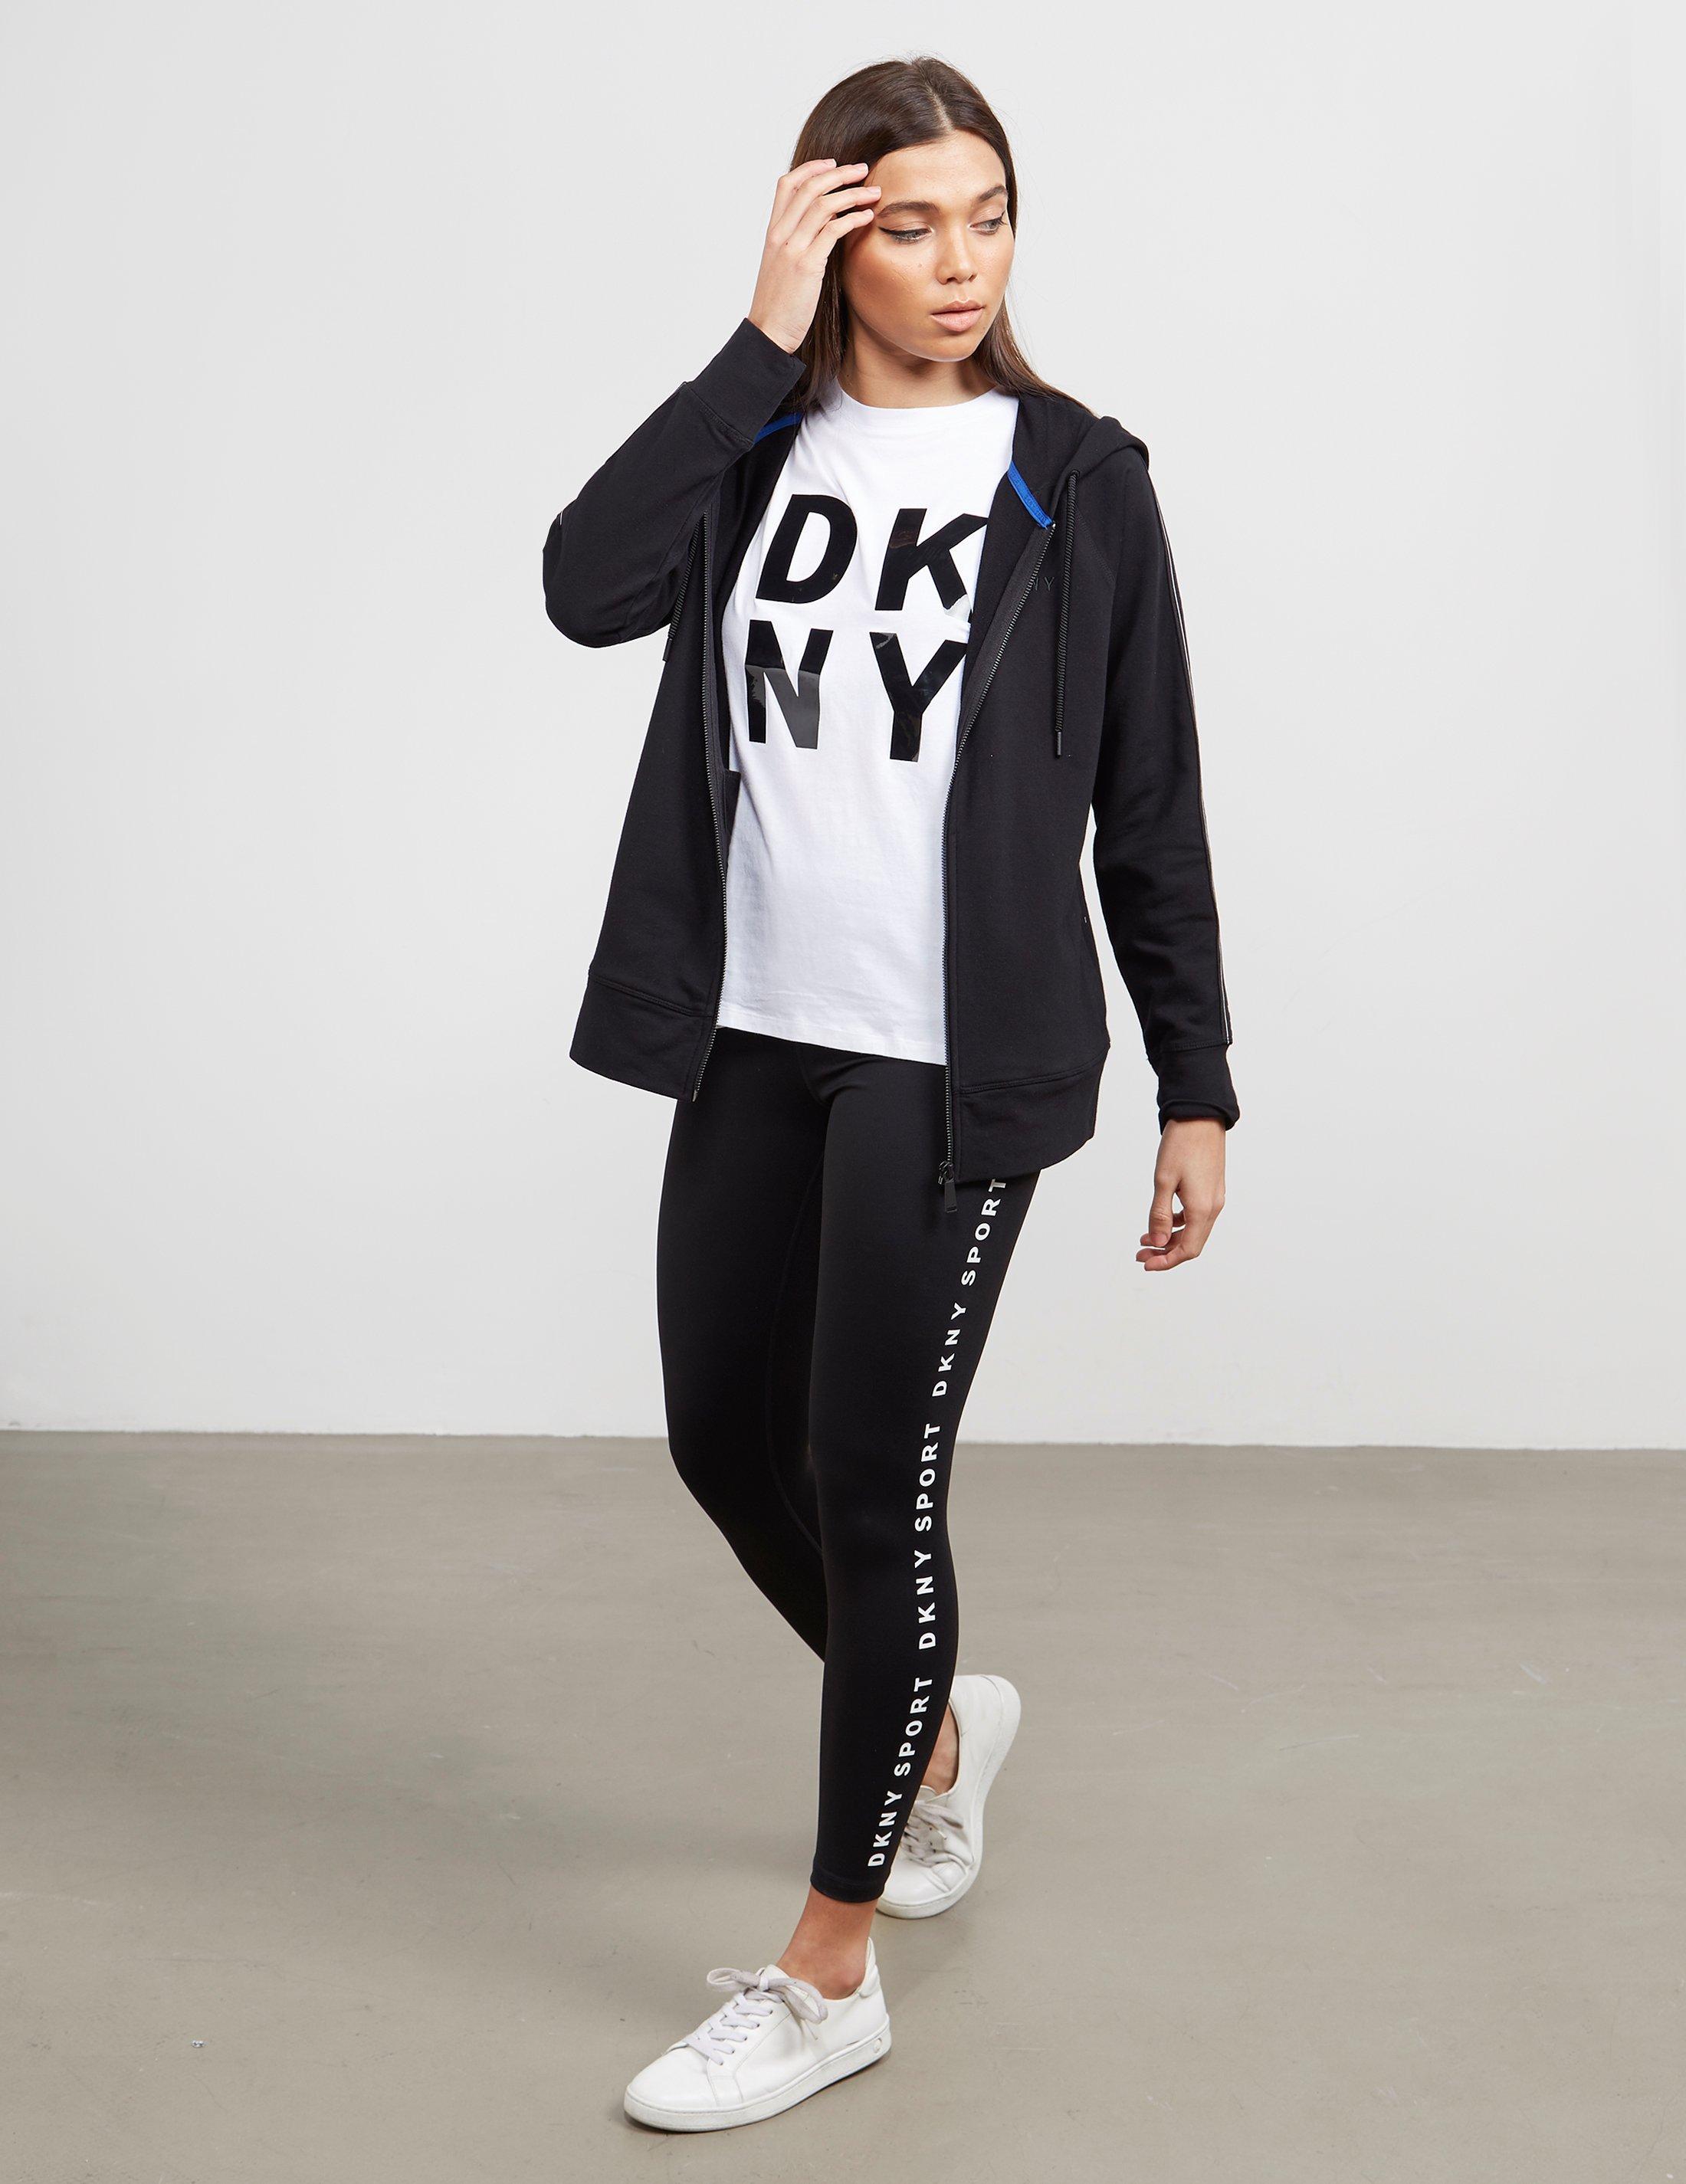 DKNY  Active  New York  Fleece  Full Zip  Athletic Zip Up